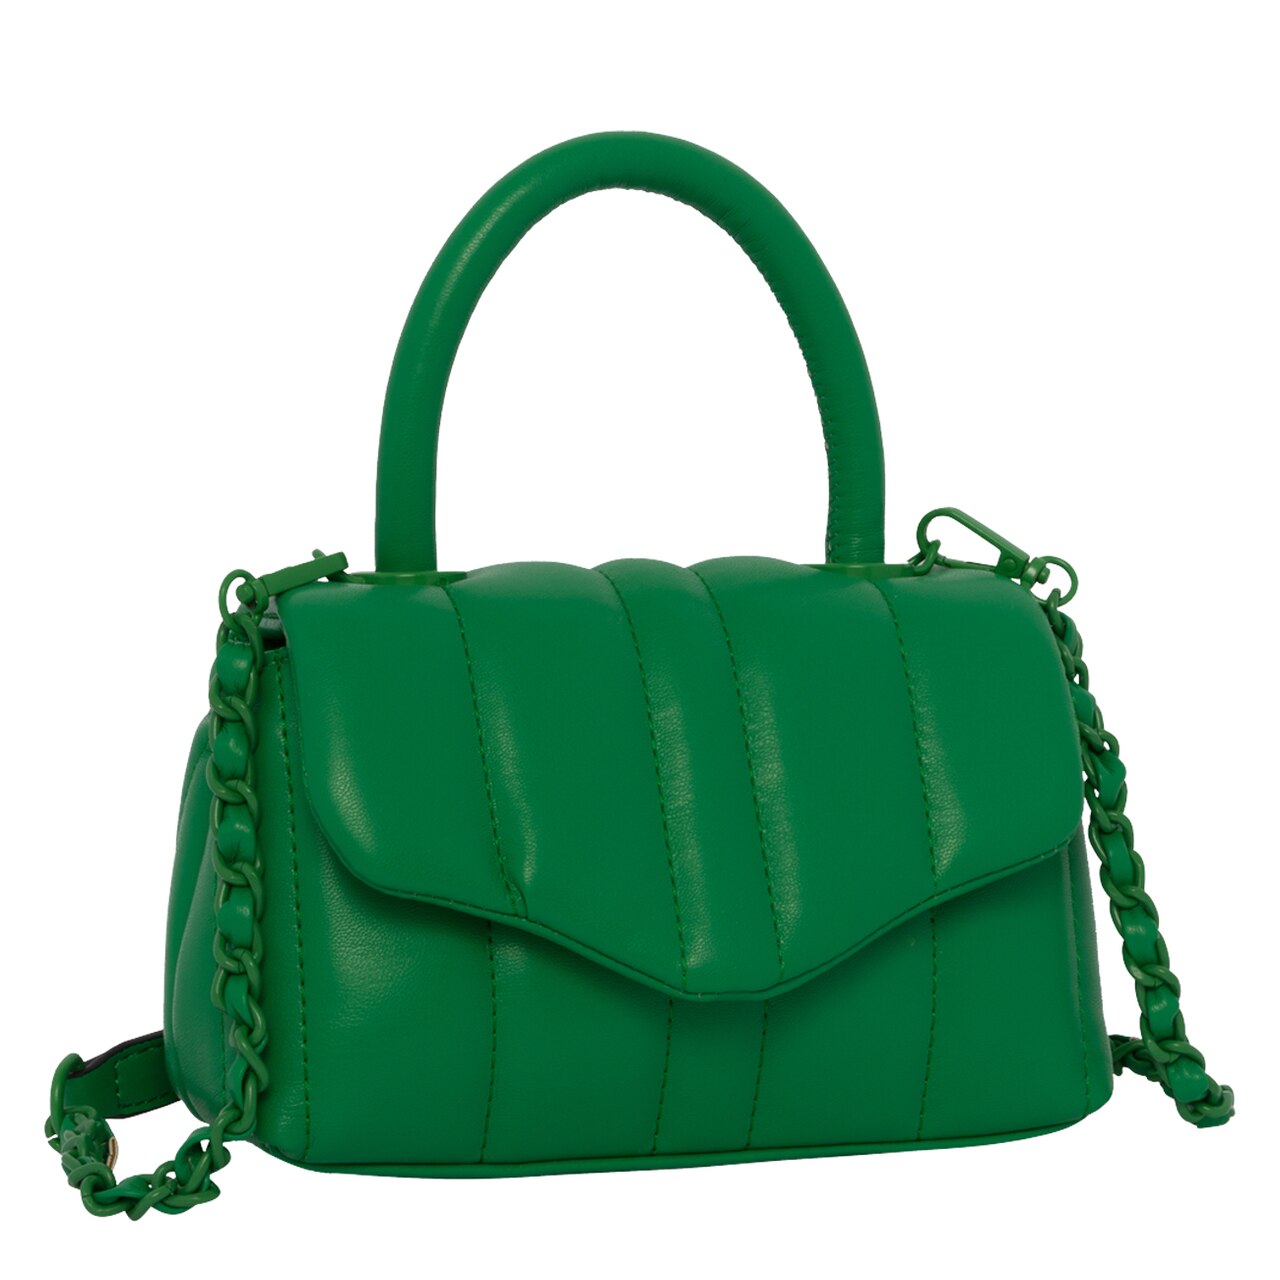 Pheobe Bag - Green - CALL IT SPRING KSA